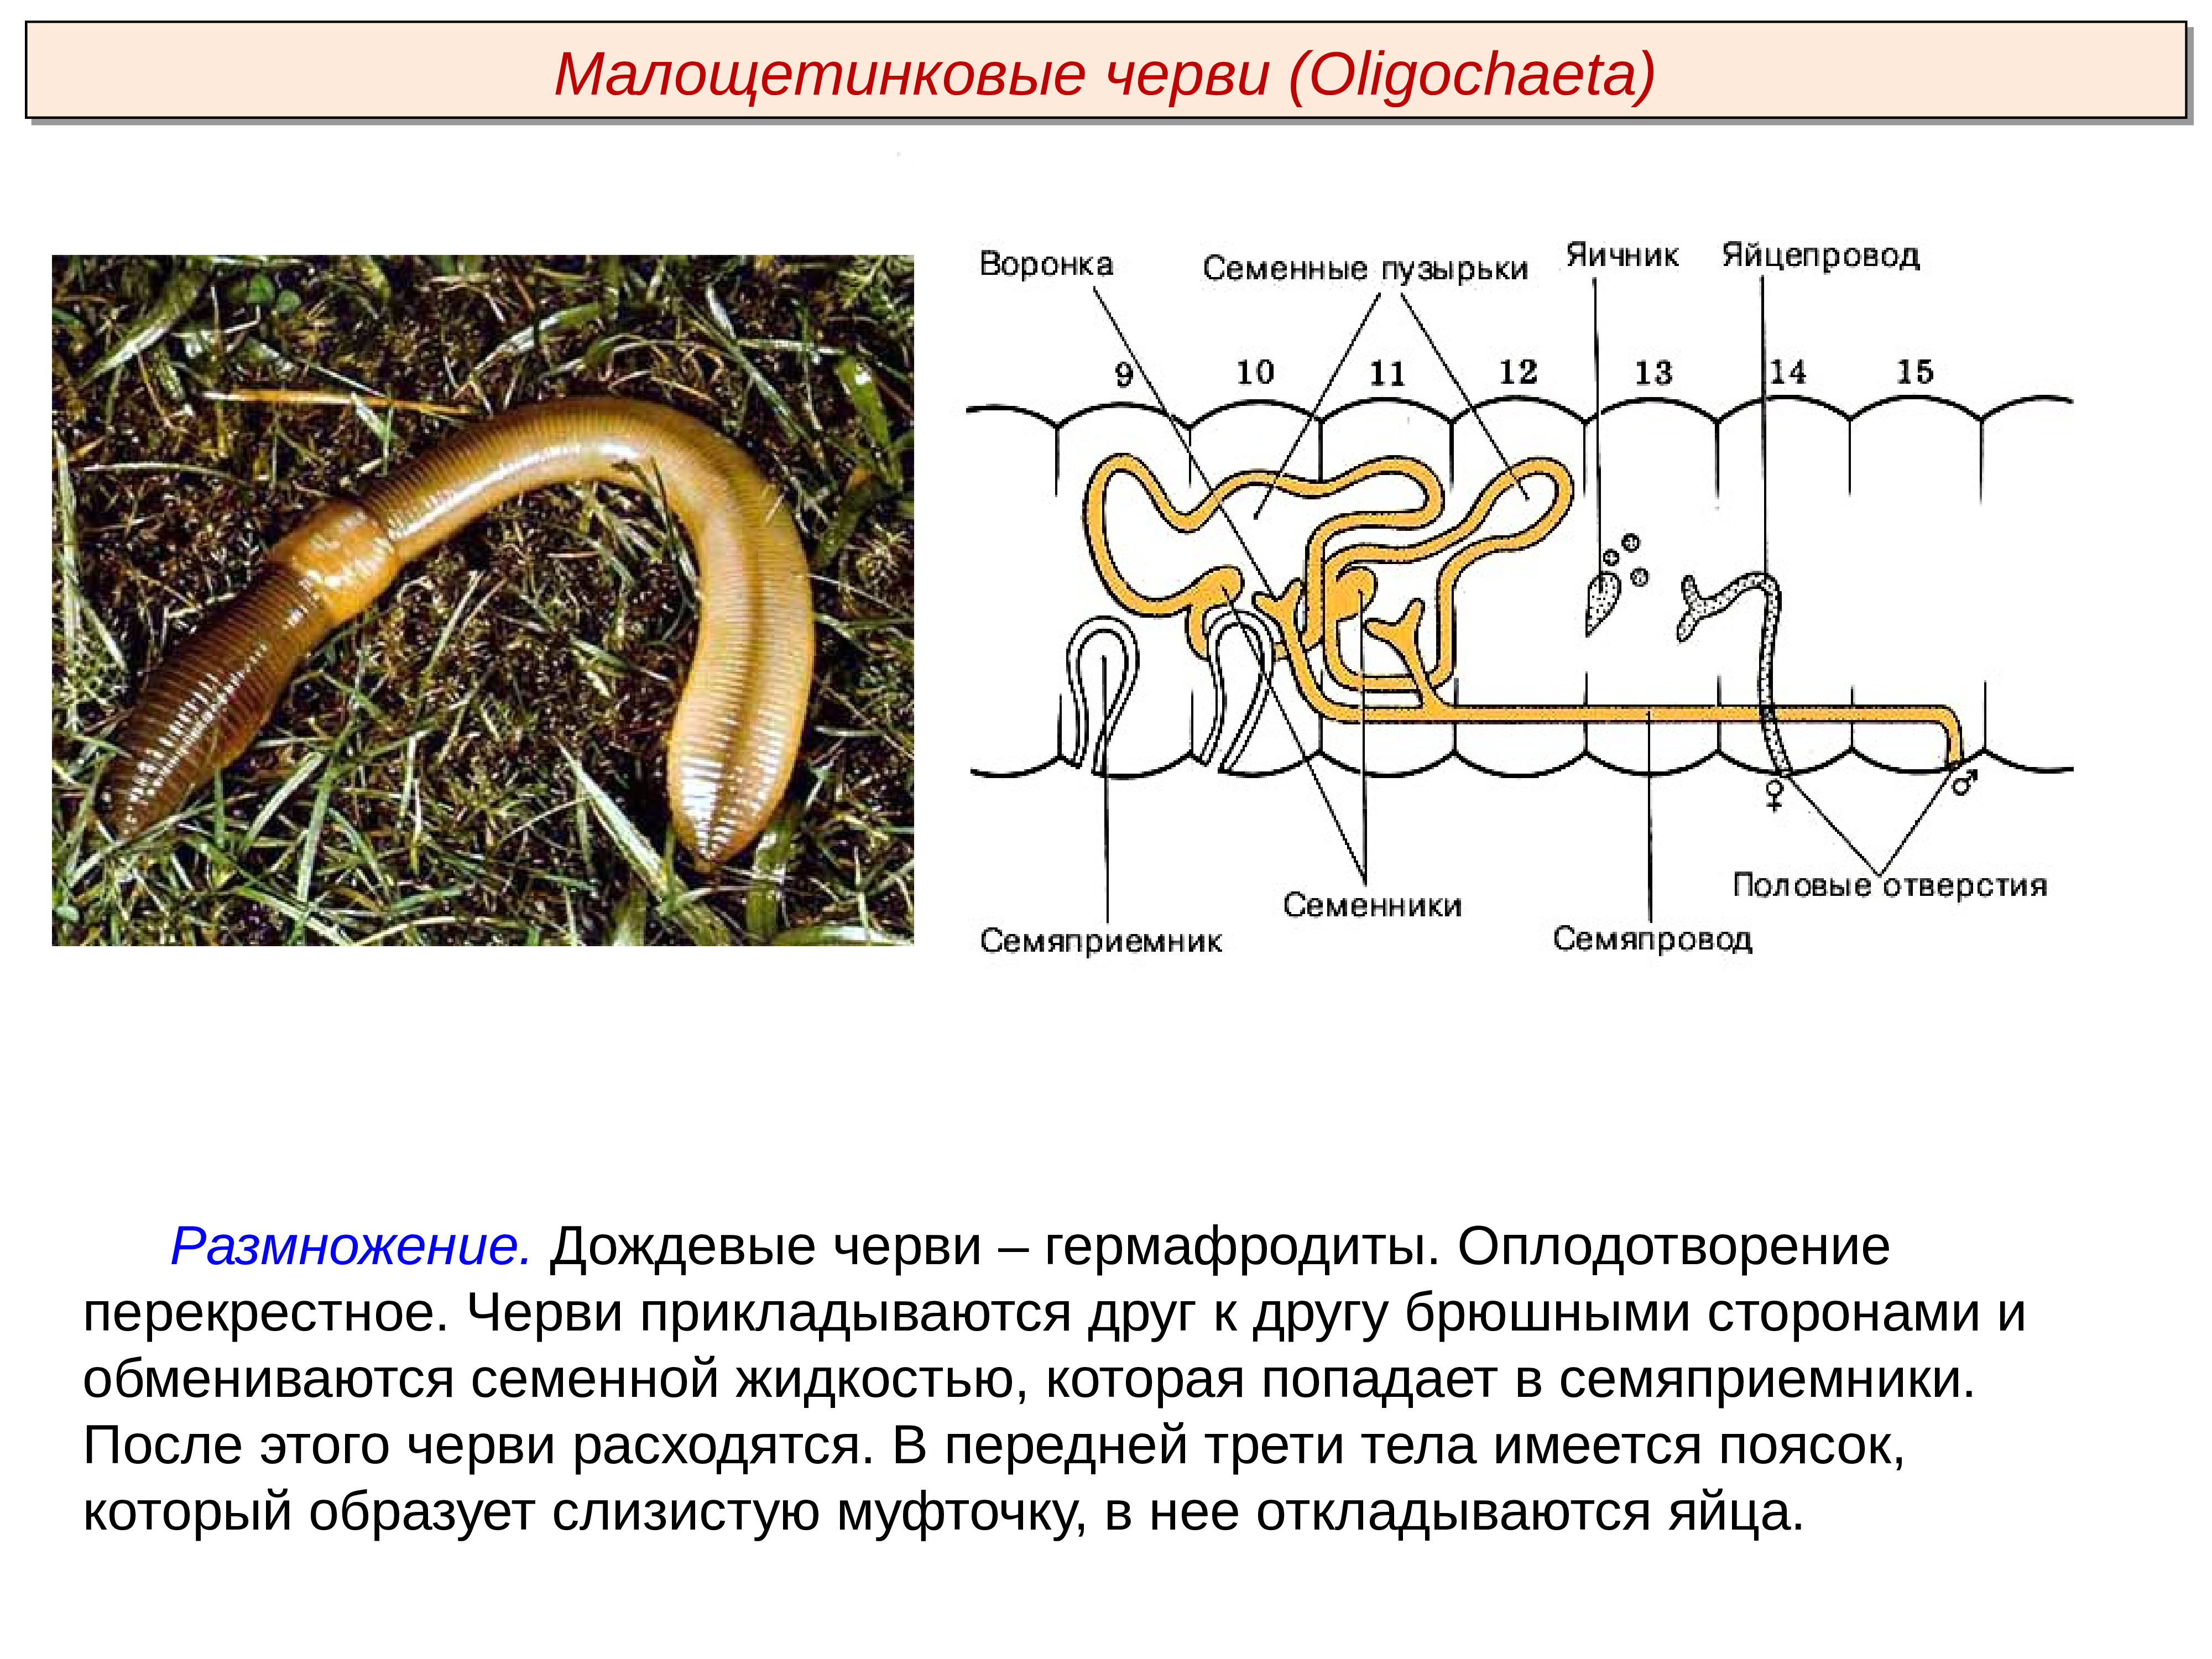 Сегмент дождевого червя. Тип кольчатые черви Annelida. Малощетинковые черви гермафродиты. Развитие кольчатых червей схема. Малощетинковые черви оплодотворение.